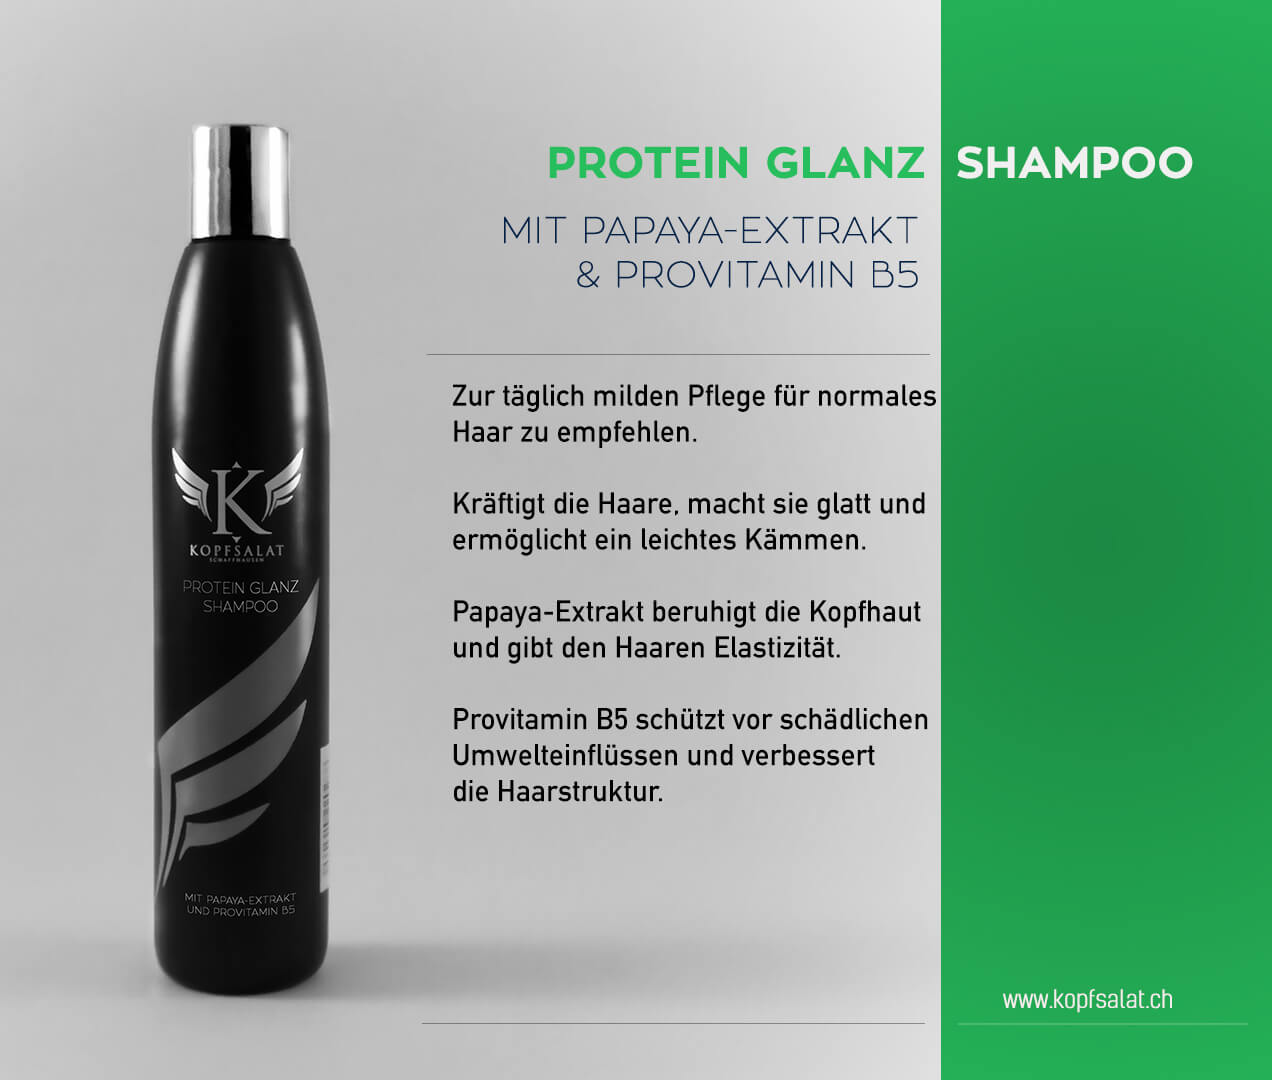 1 protein glanz shampoo